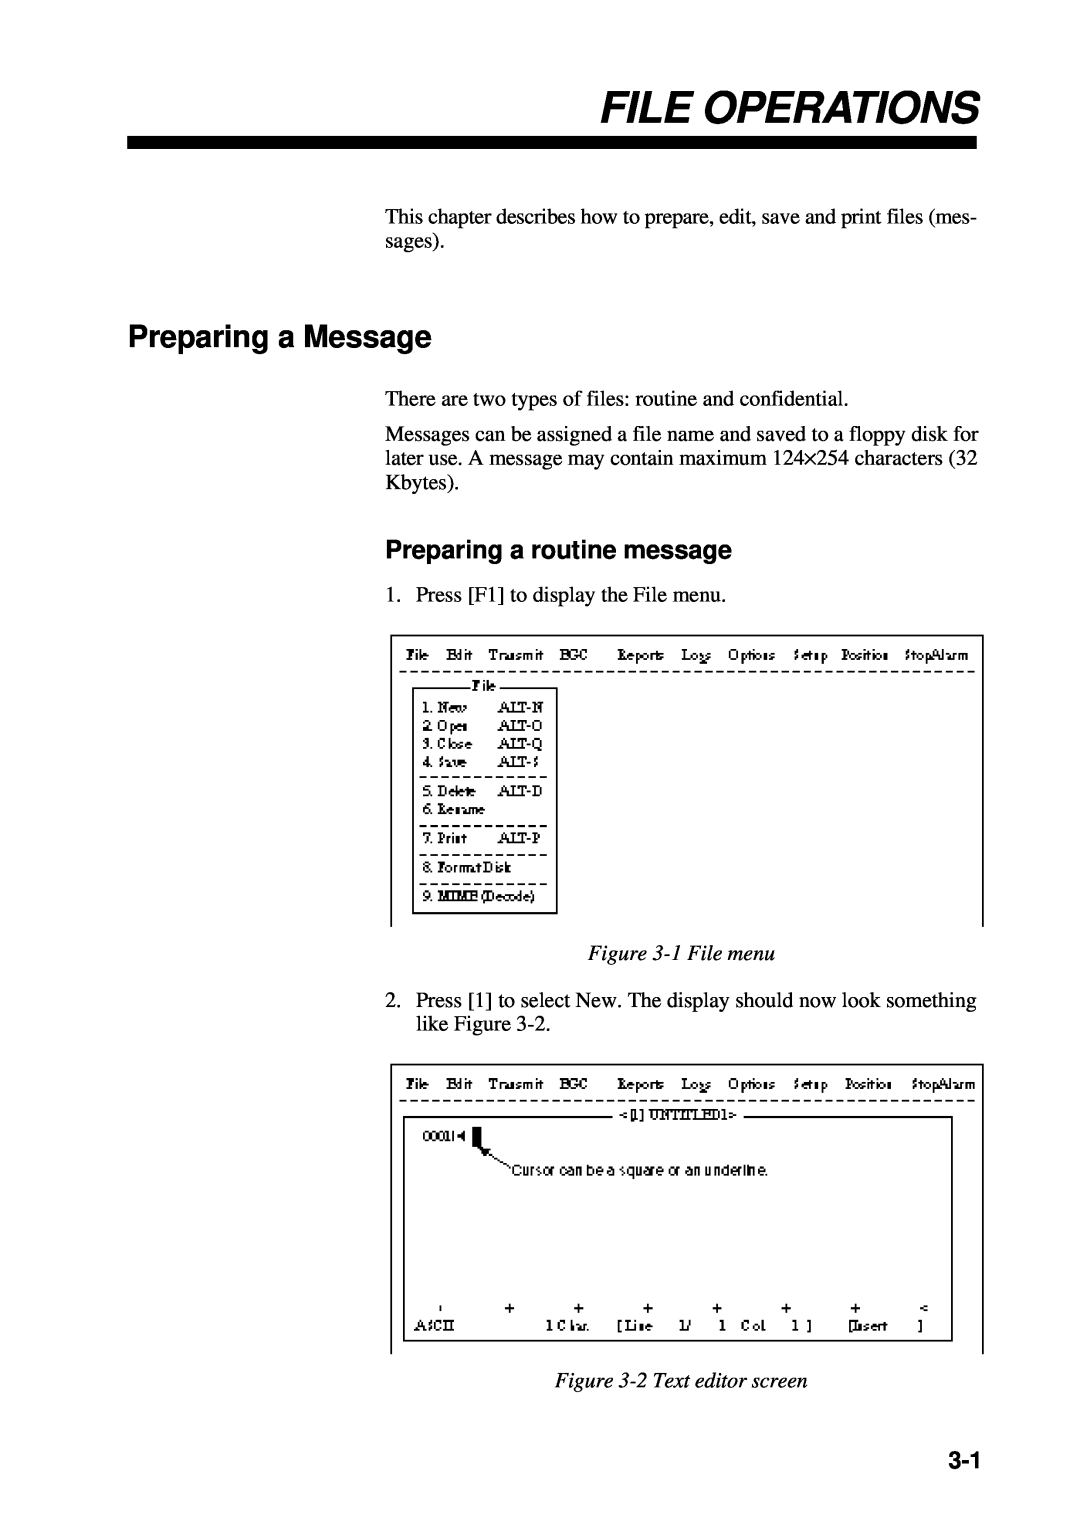 Furuno RC-1500-1T File Operations, Preparing a Message, Preparing a routine message, 1 File menu, 2 Text editor screen 